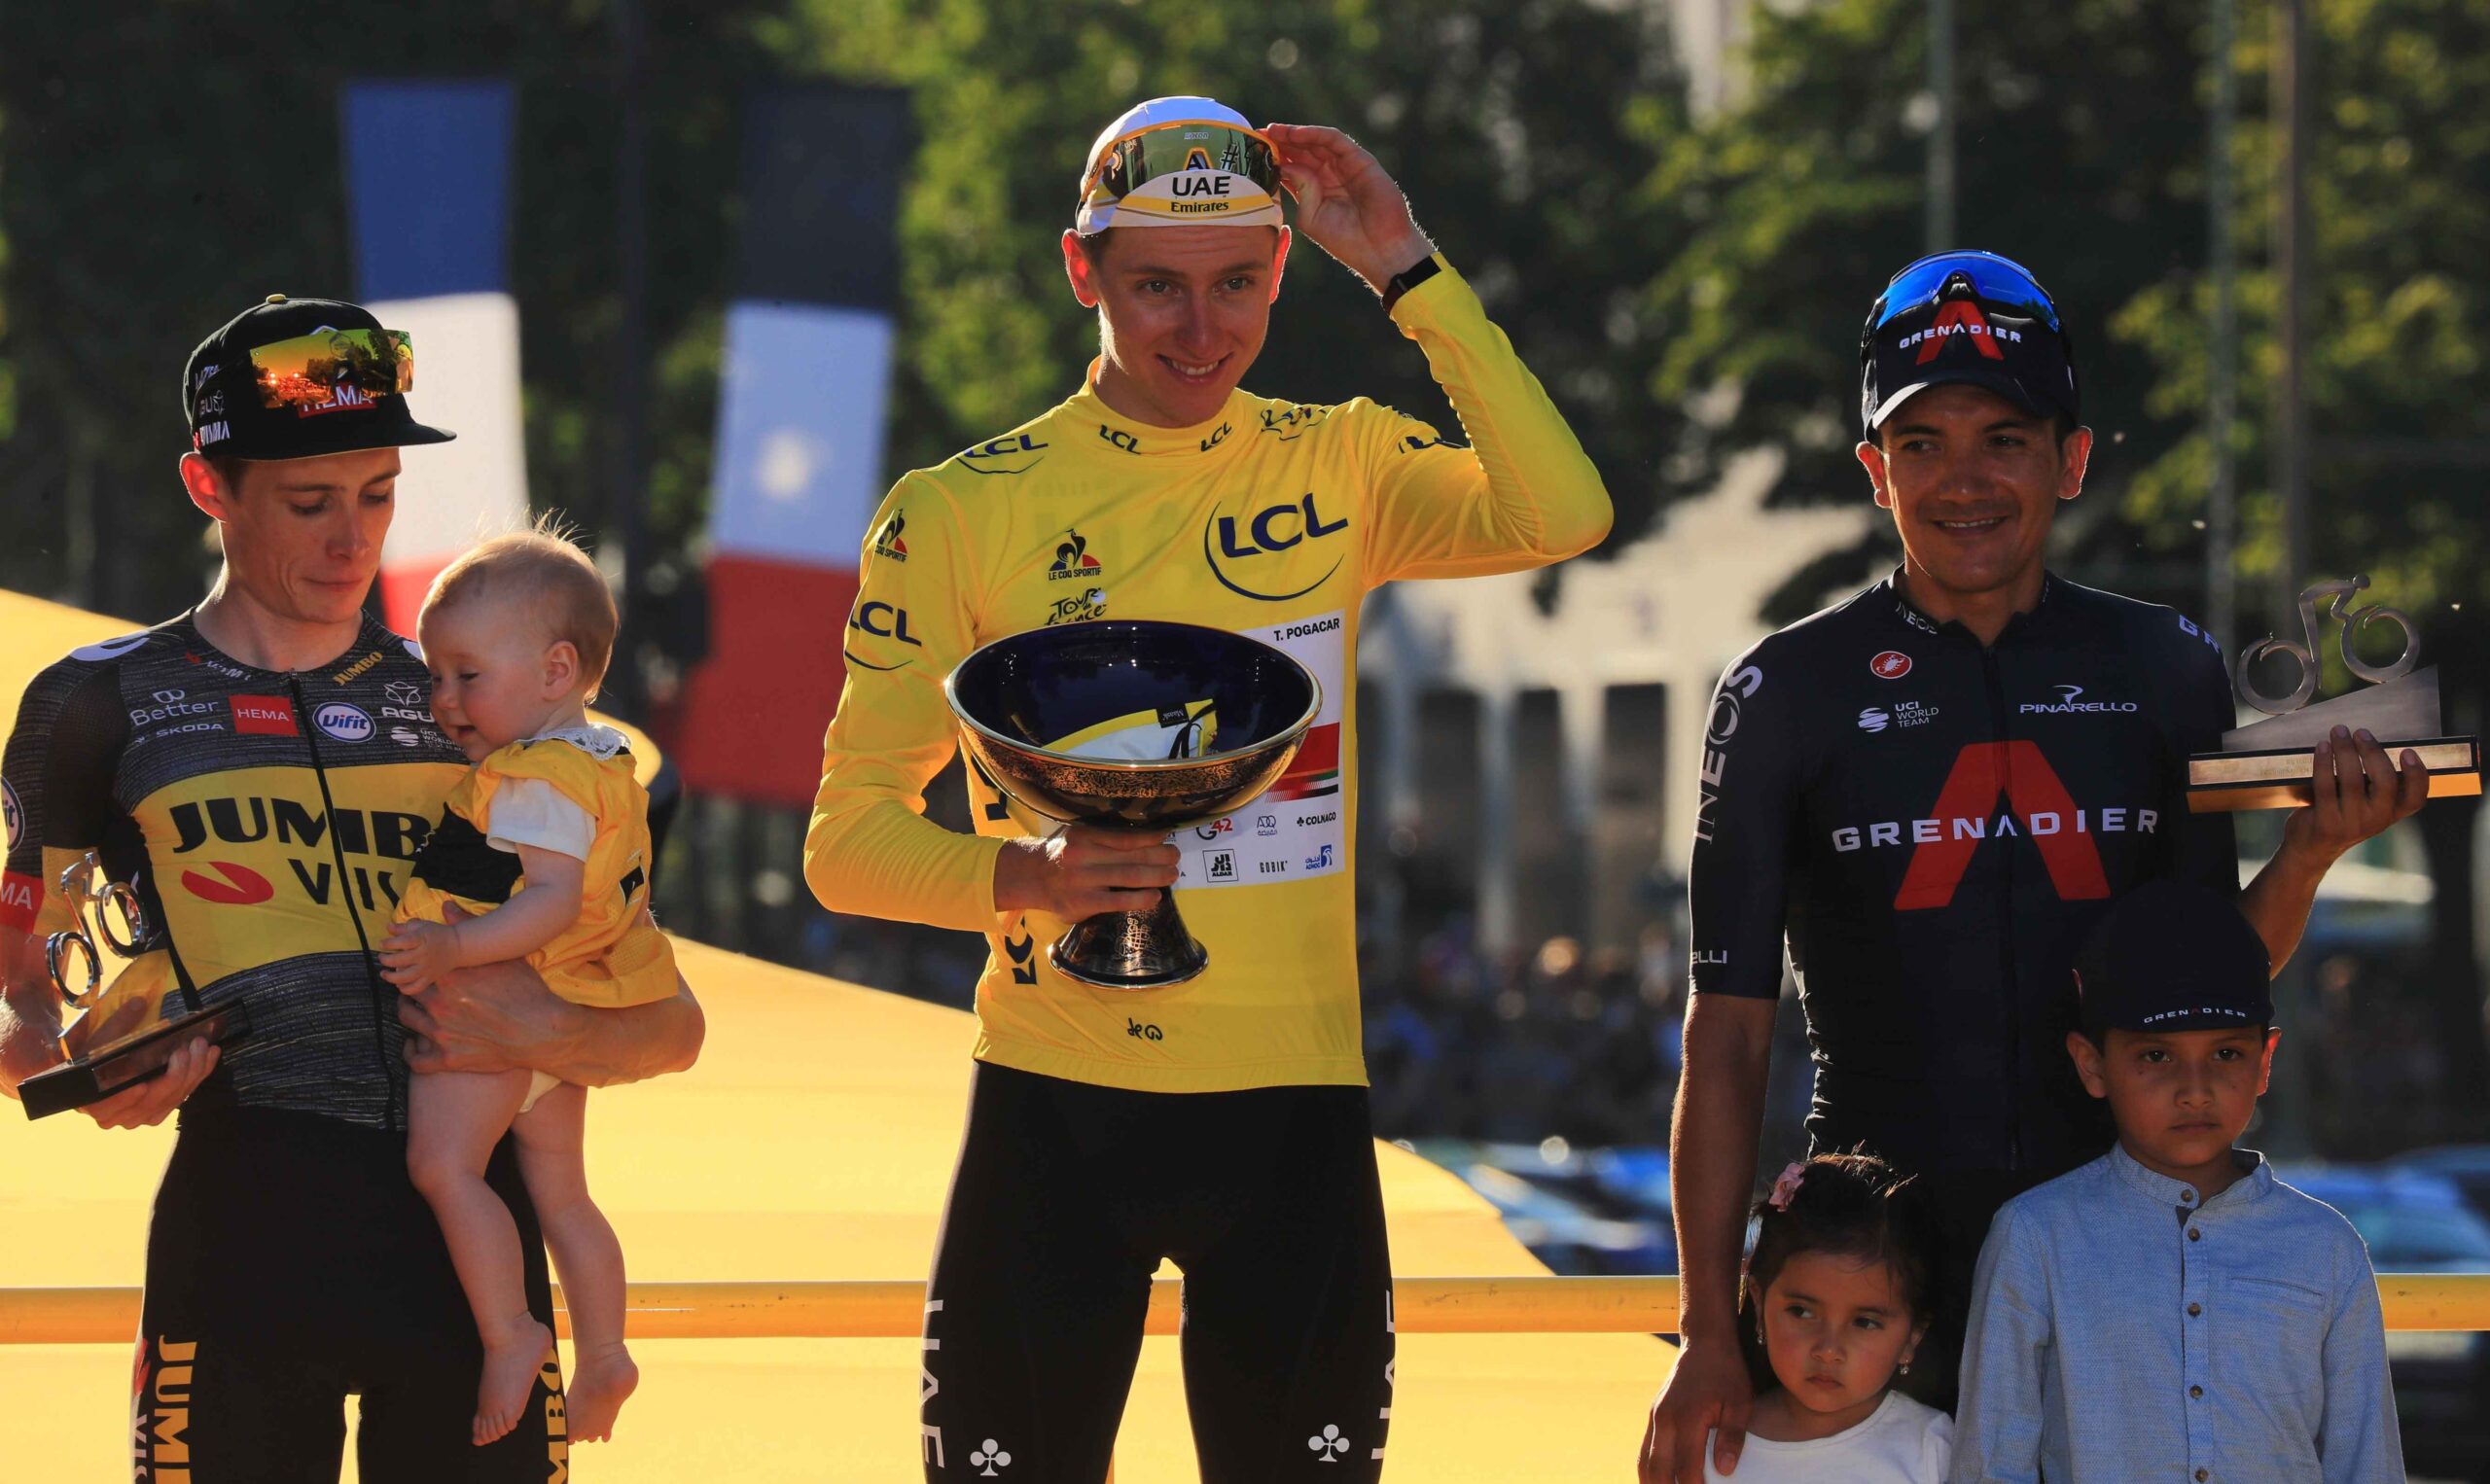 Richard Carapaz (der.) en el podio del Tour de Francia 2021 con el danés Jonas Vinegaard y el ganador Tadej Pogacar. Foto: EFE